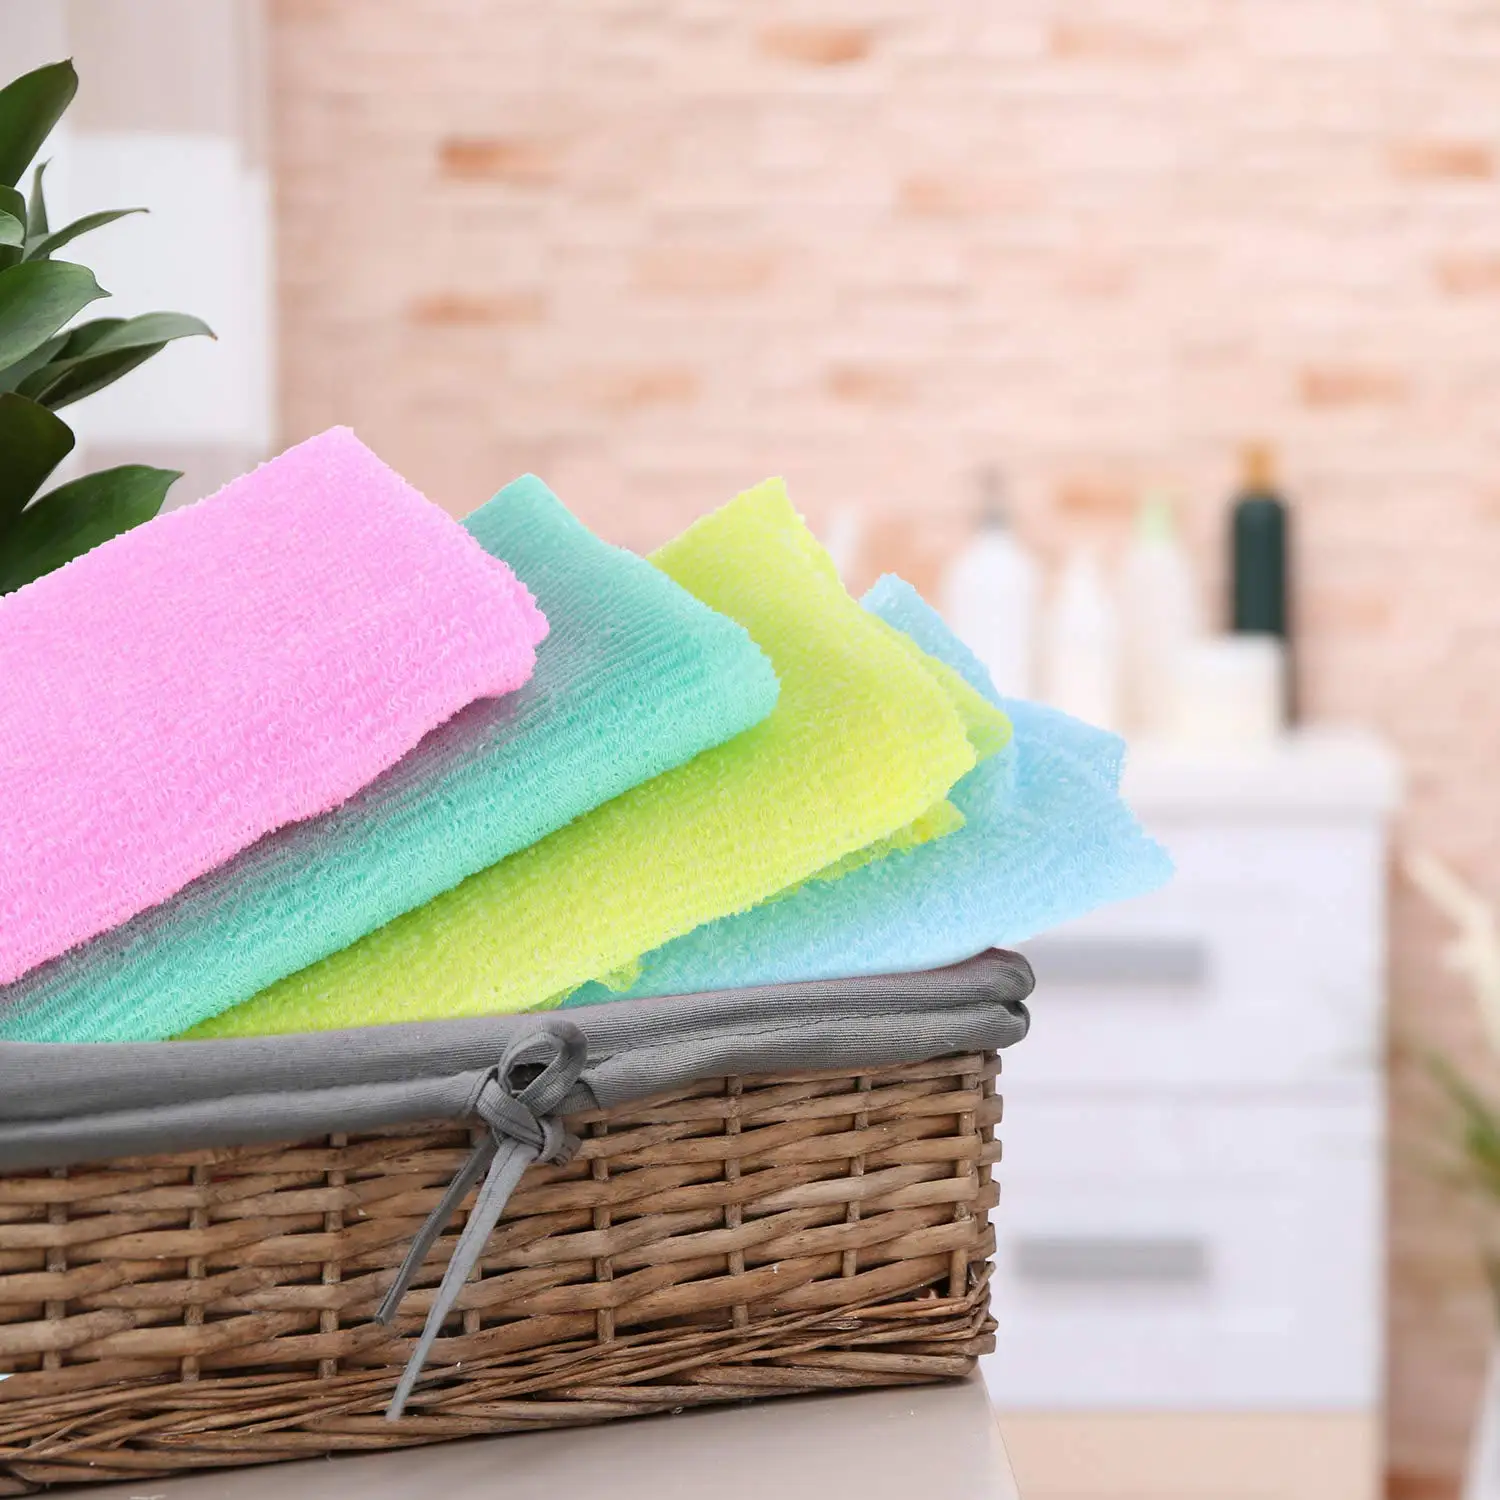 Quesuc 4 Pieces Beauty Skin Bath Wash Towel Exfoliating Bath Cloth Magic Shower Washcloth for Body 35 Inches 4 